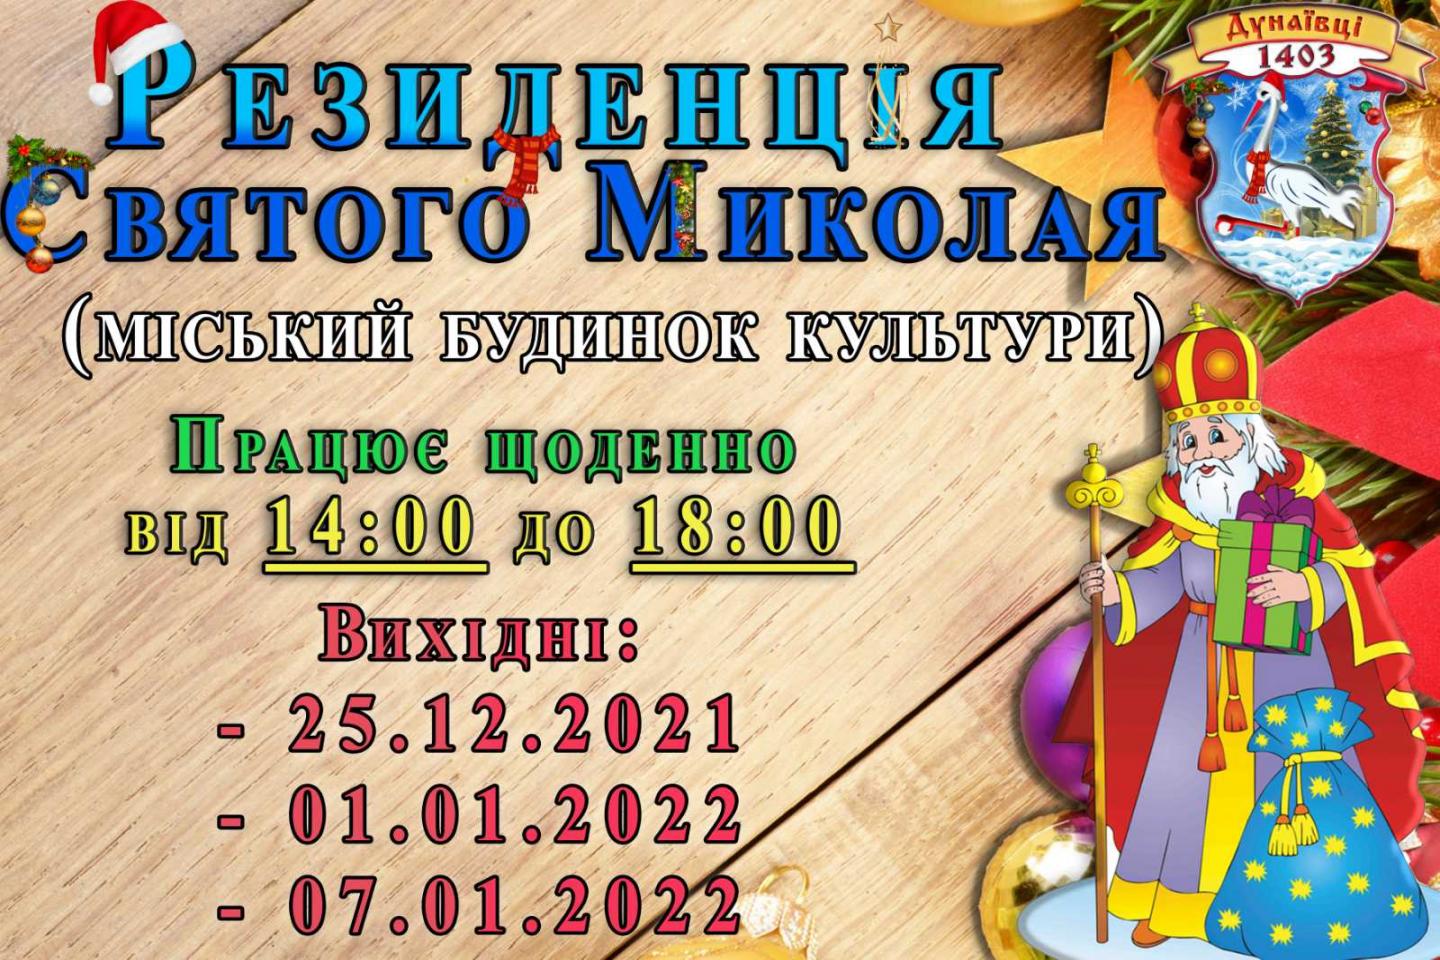 http://dunrada.gov.ua/uploadfile/archive_news/2021/12/22/2021-12-22_5468/images/images-56351.jpg